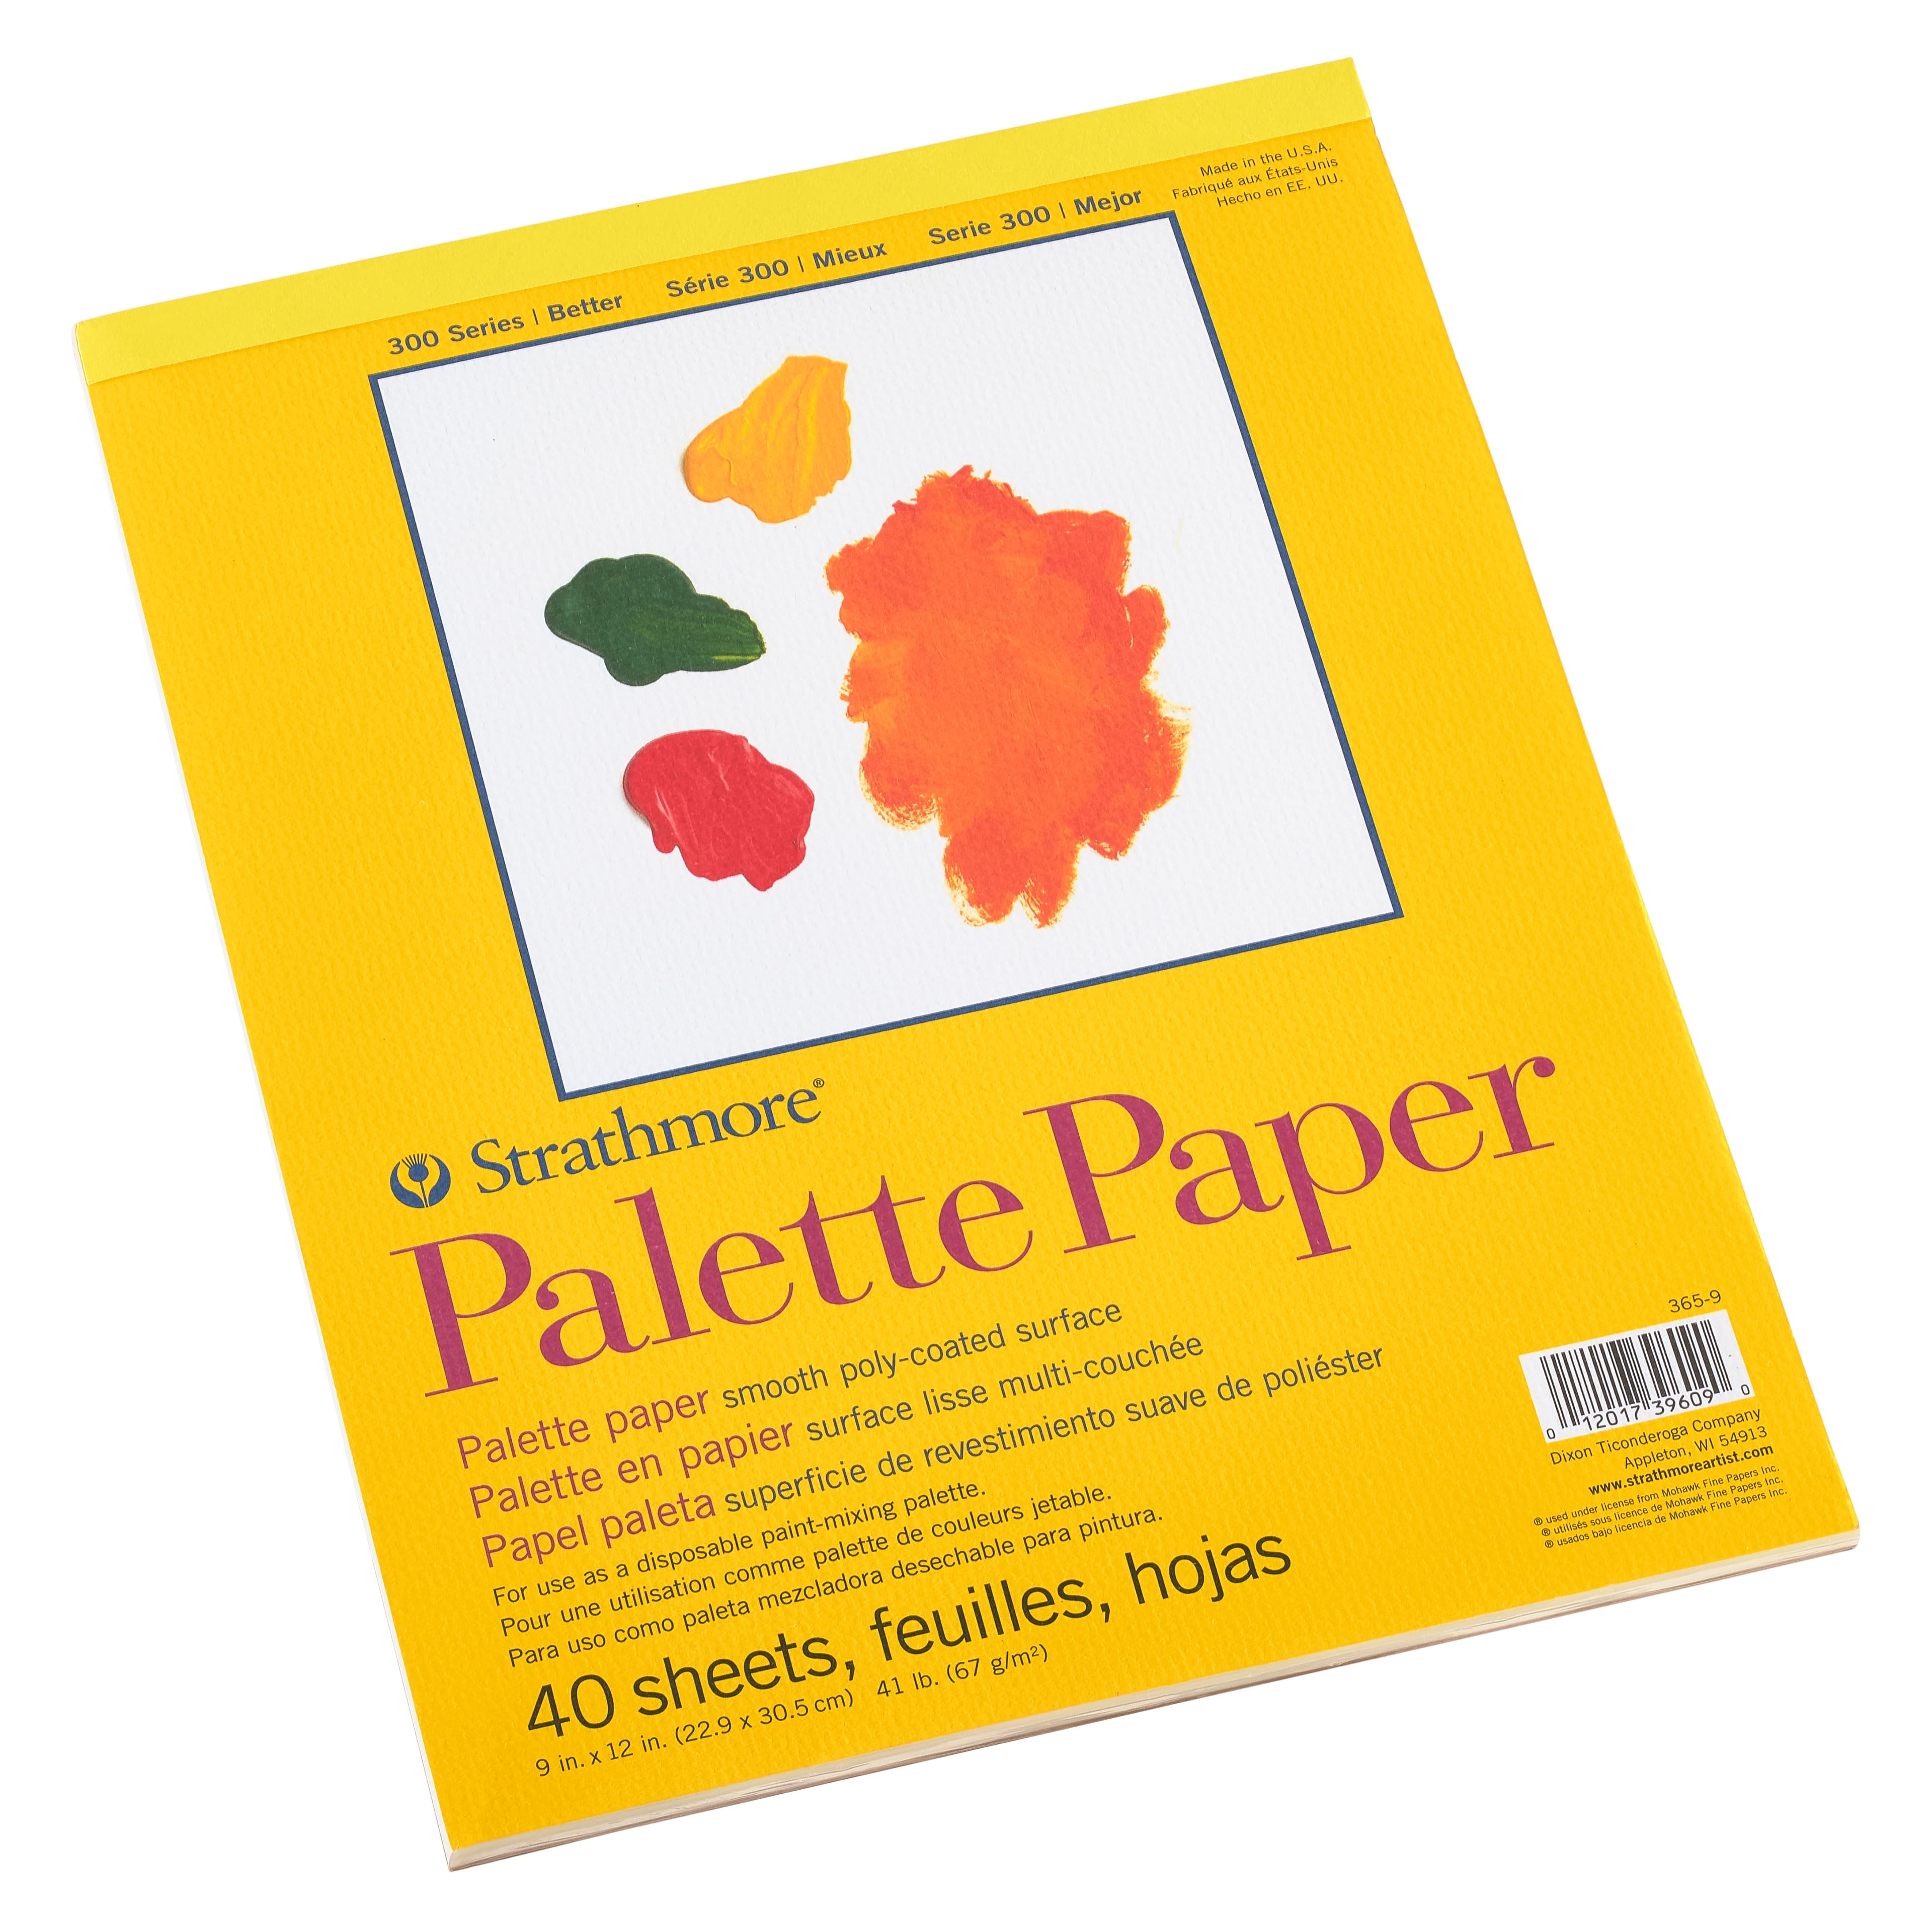 Palette Paper - Vinyl Pro